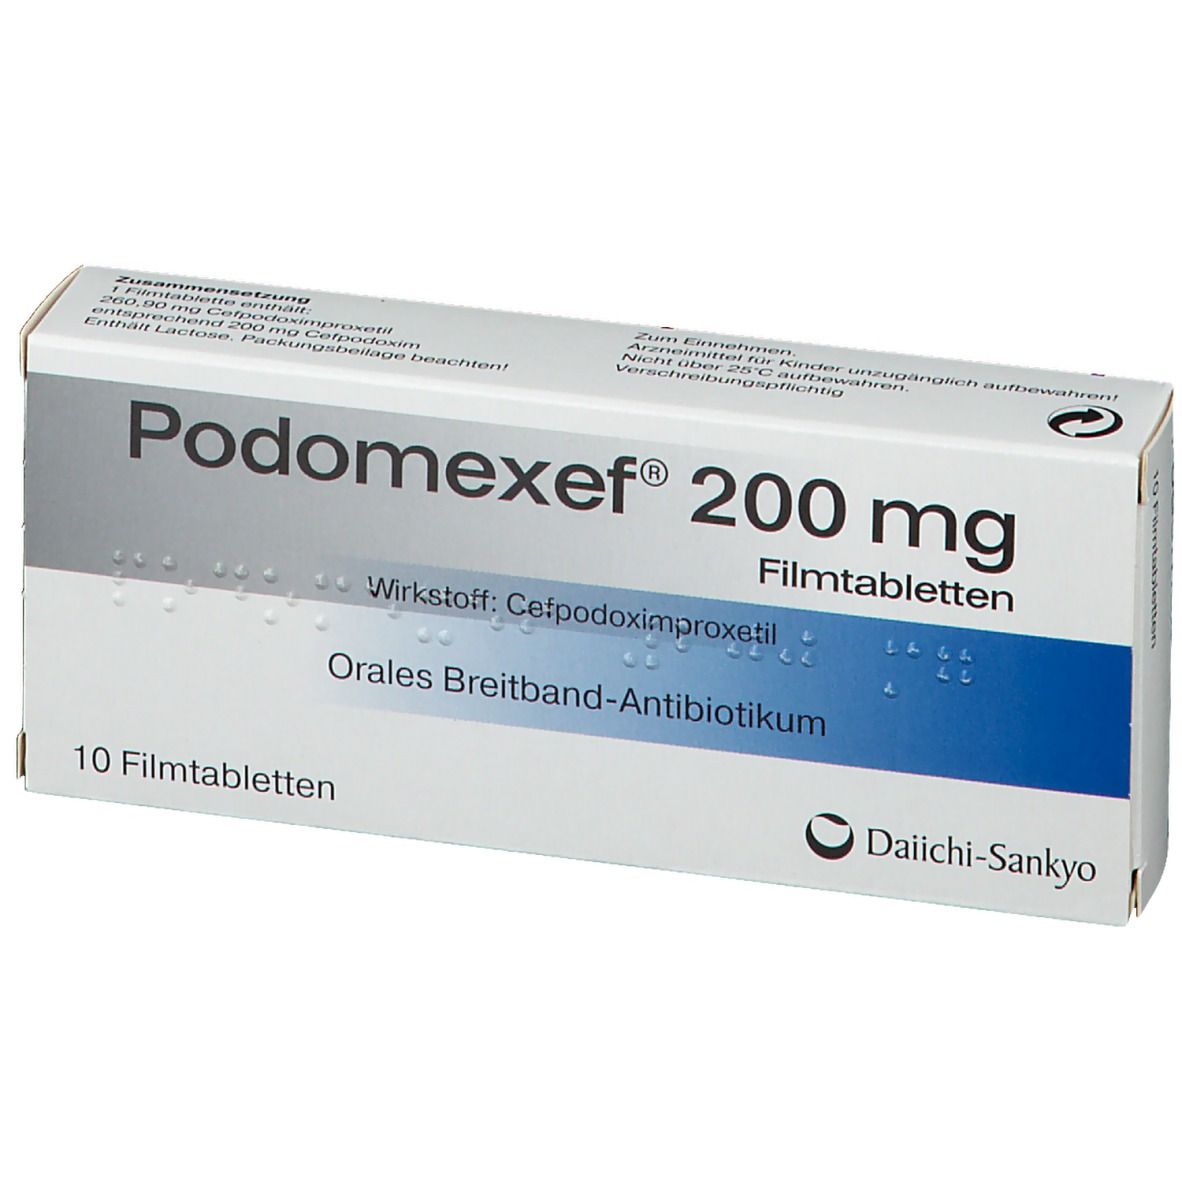 Podomexef® 200 mg